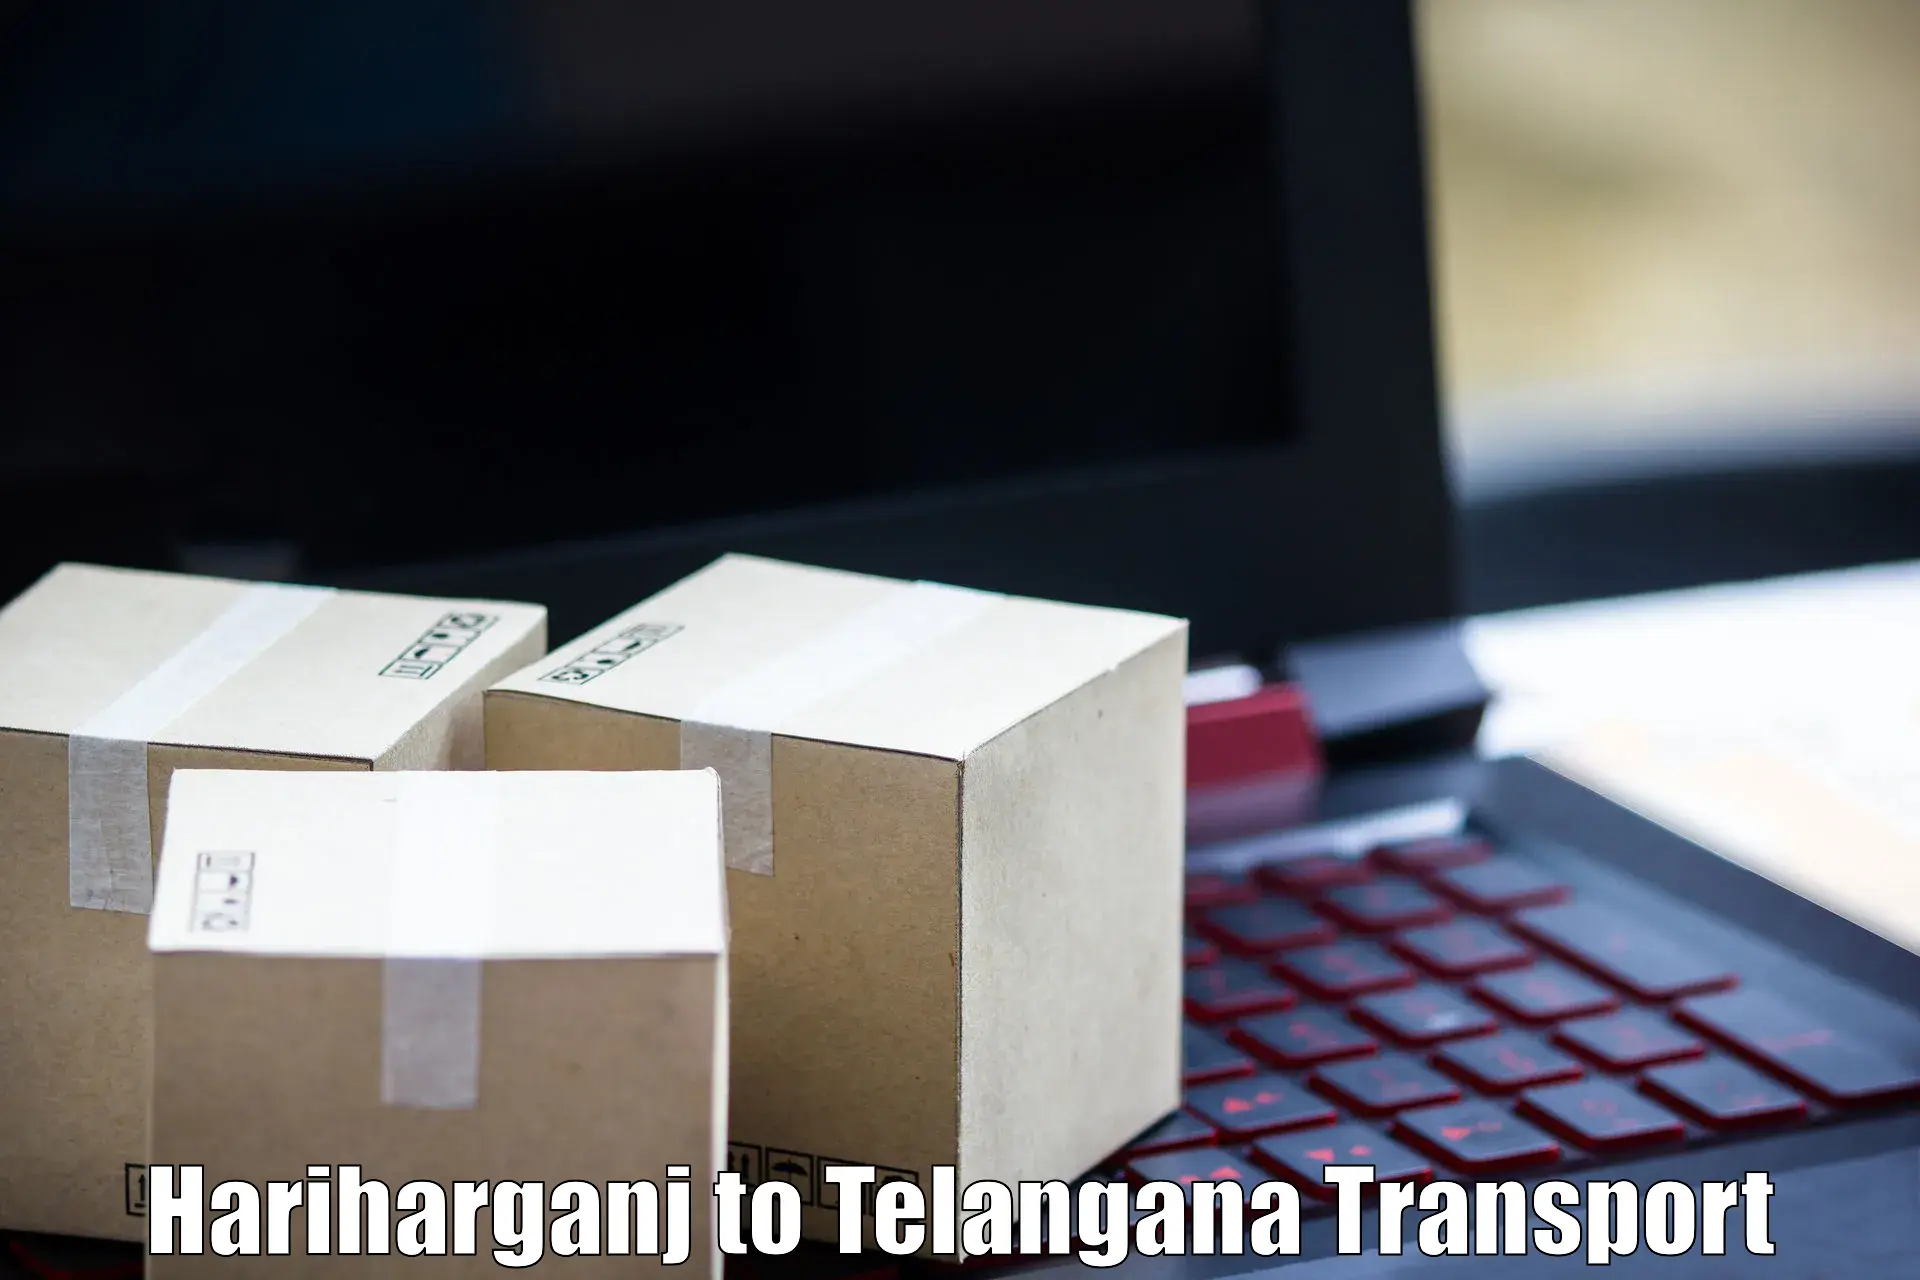 Road transport online services Hariharganj to IIT Hyderabad